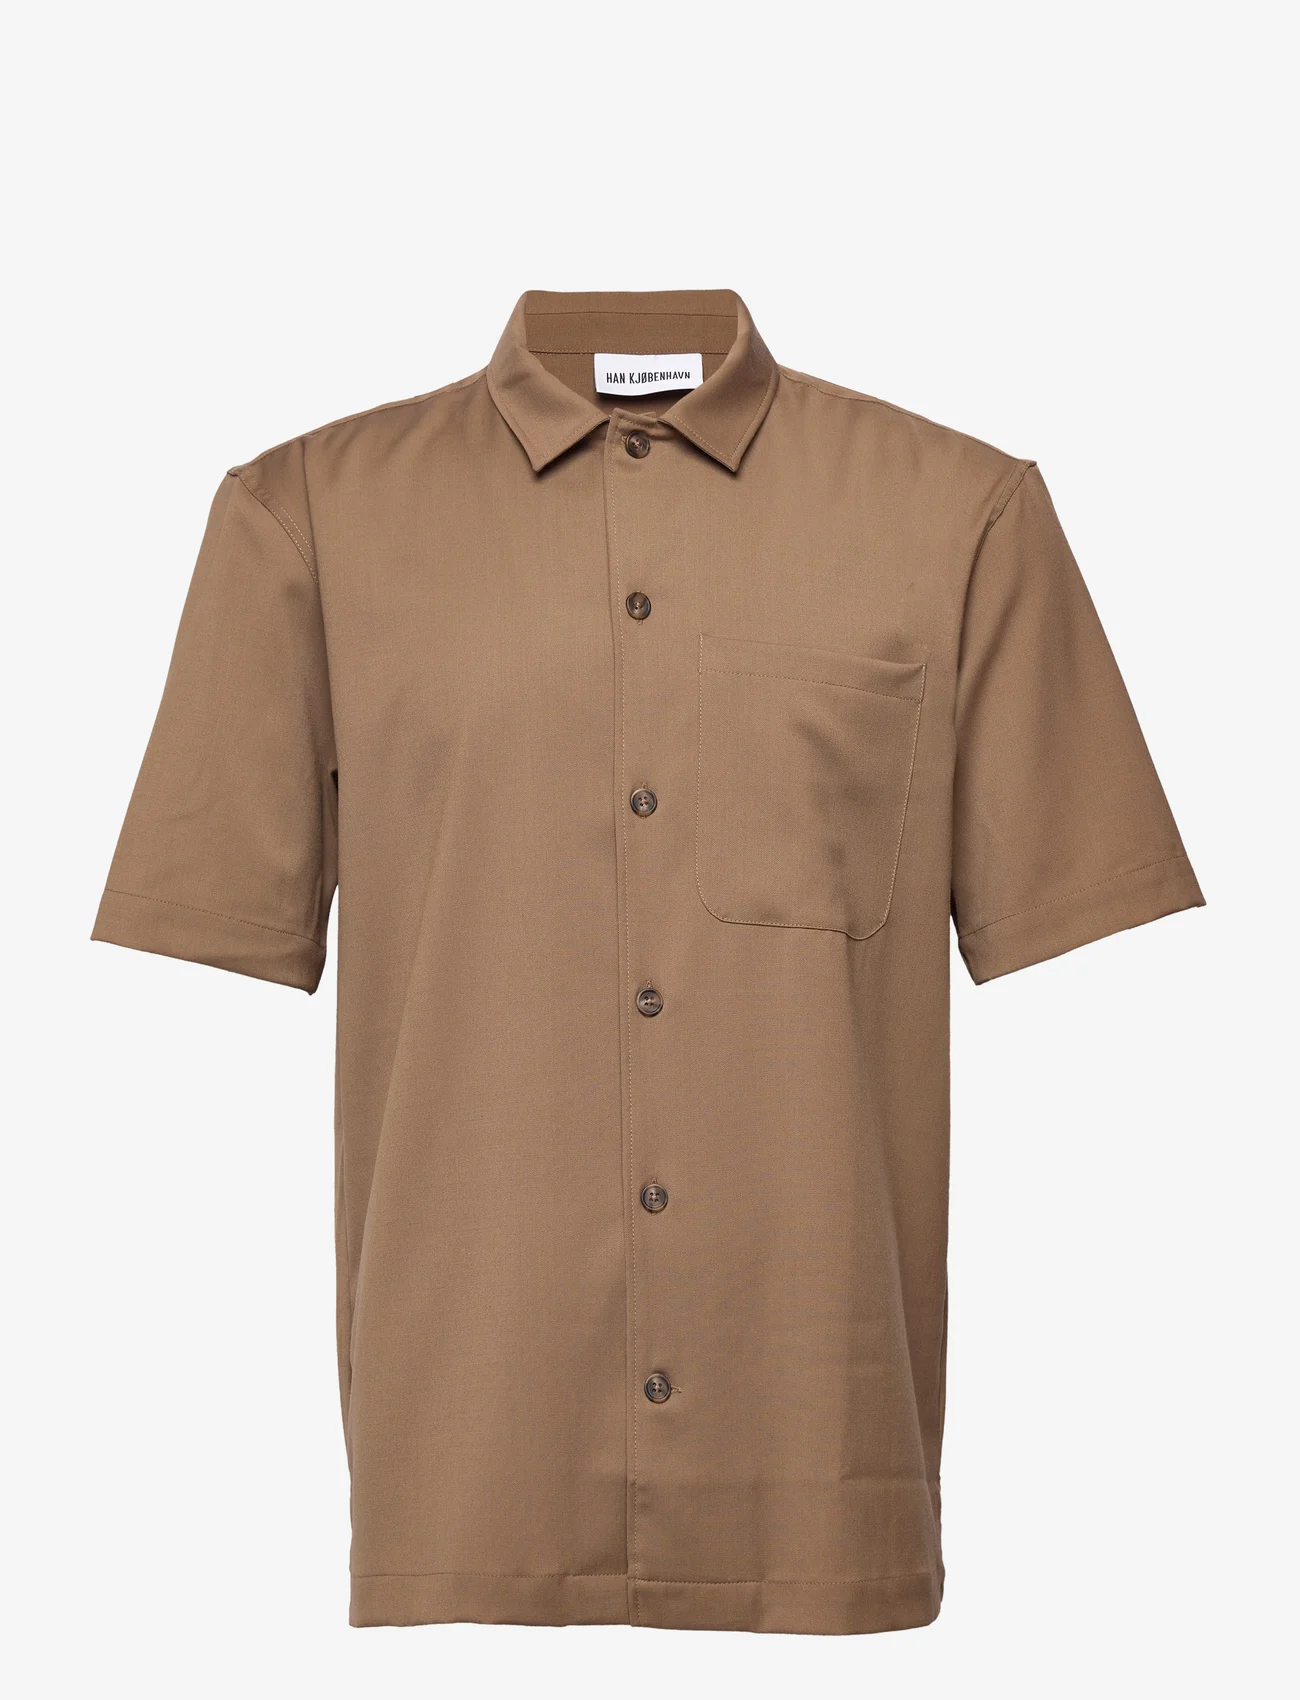 HAN Kjøbenhavn - Summer Shirt - laisvalaikio marškiniai - light brown - 0